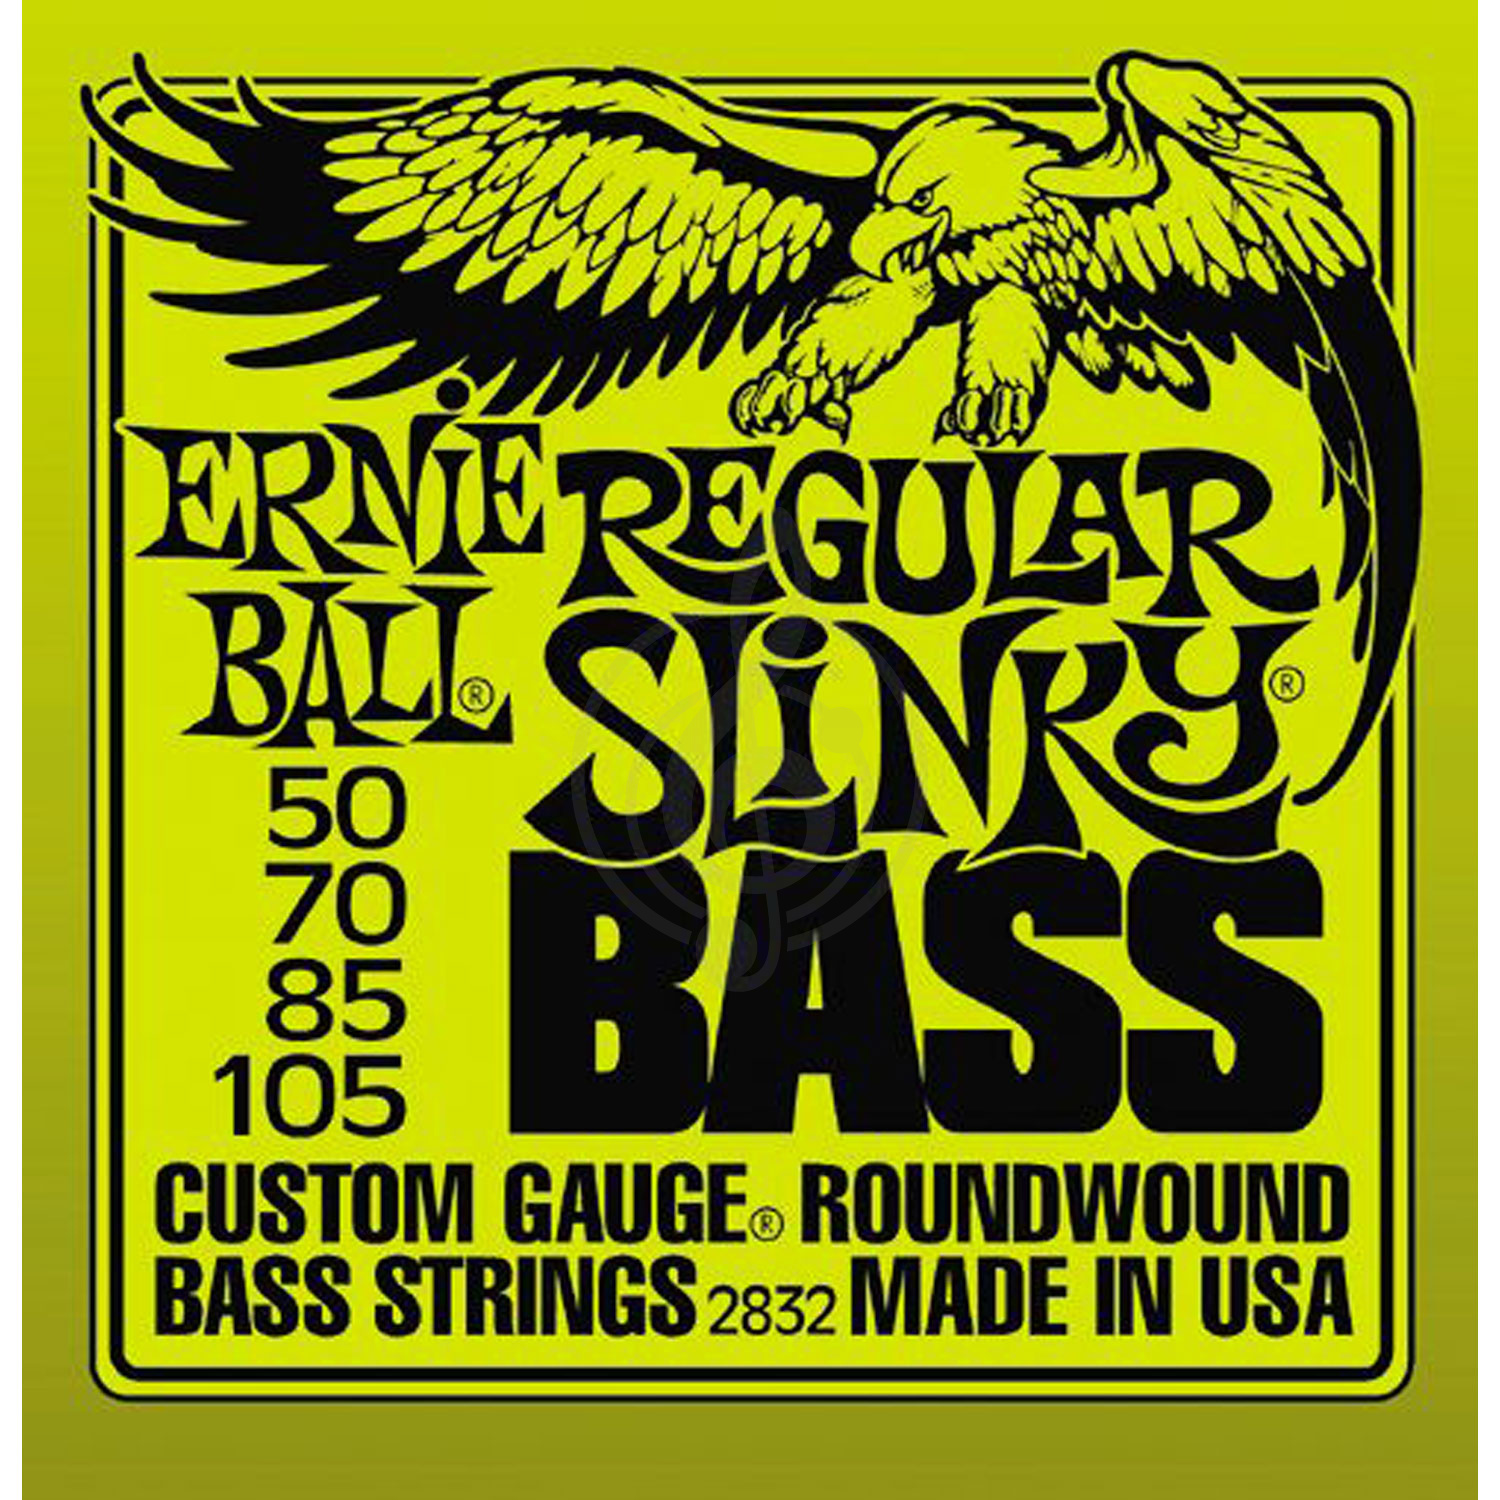 Струны для бас-гитары Струны для бас-гитар Ernie Ball Ernie Ball 2832 струны для бас гитары Regular  (50-70-85-105) 2832 - фото 1